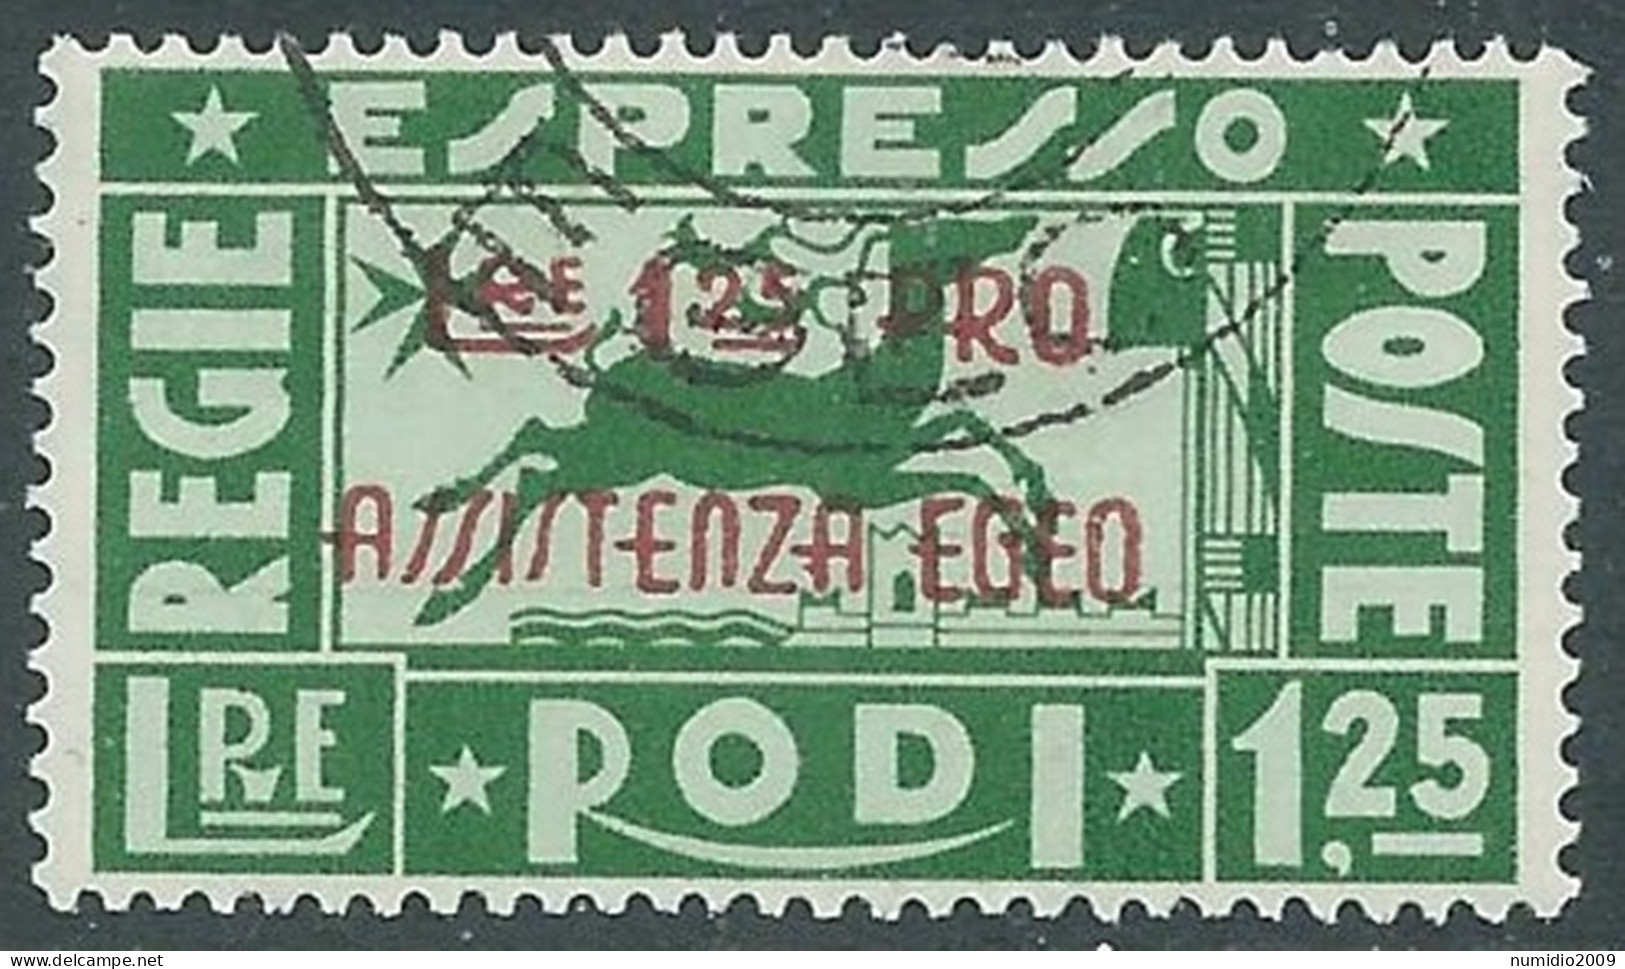 1943 OCCUPAZIONE TEDESCA EGEO ESPRESSO USATO PRO ASSISTENZA 1,25 LIRE - RC14-8 - Egeo (Occup. Tedesca)